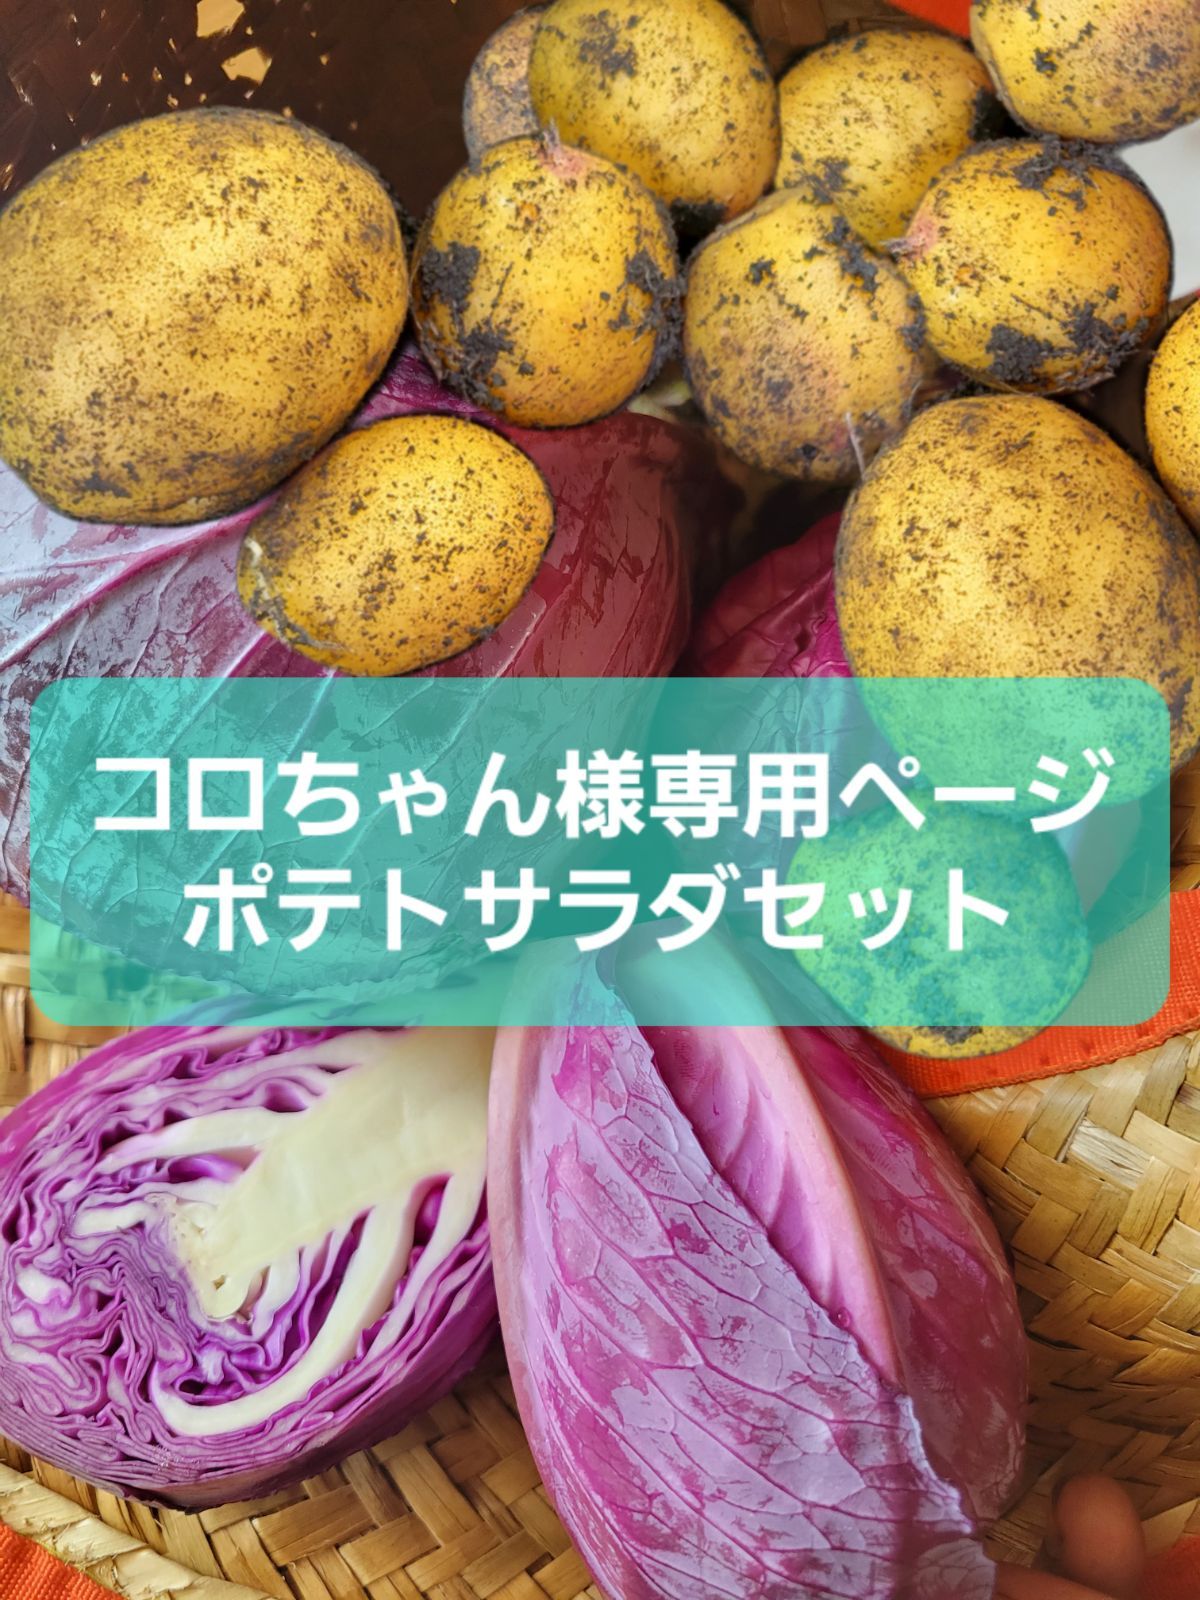 コロちゃん様専用 ポテトサラダセット - 多彩農園 - メルカリ